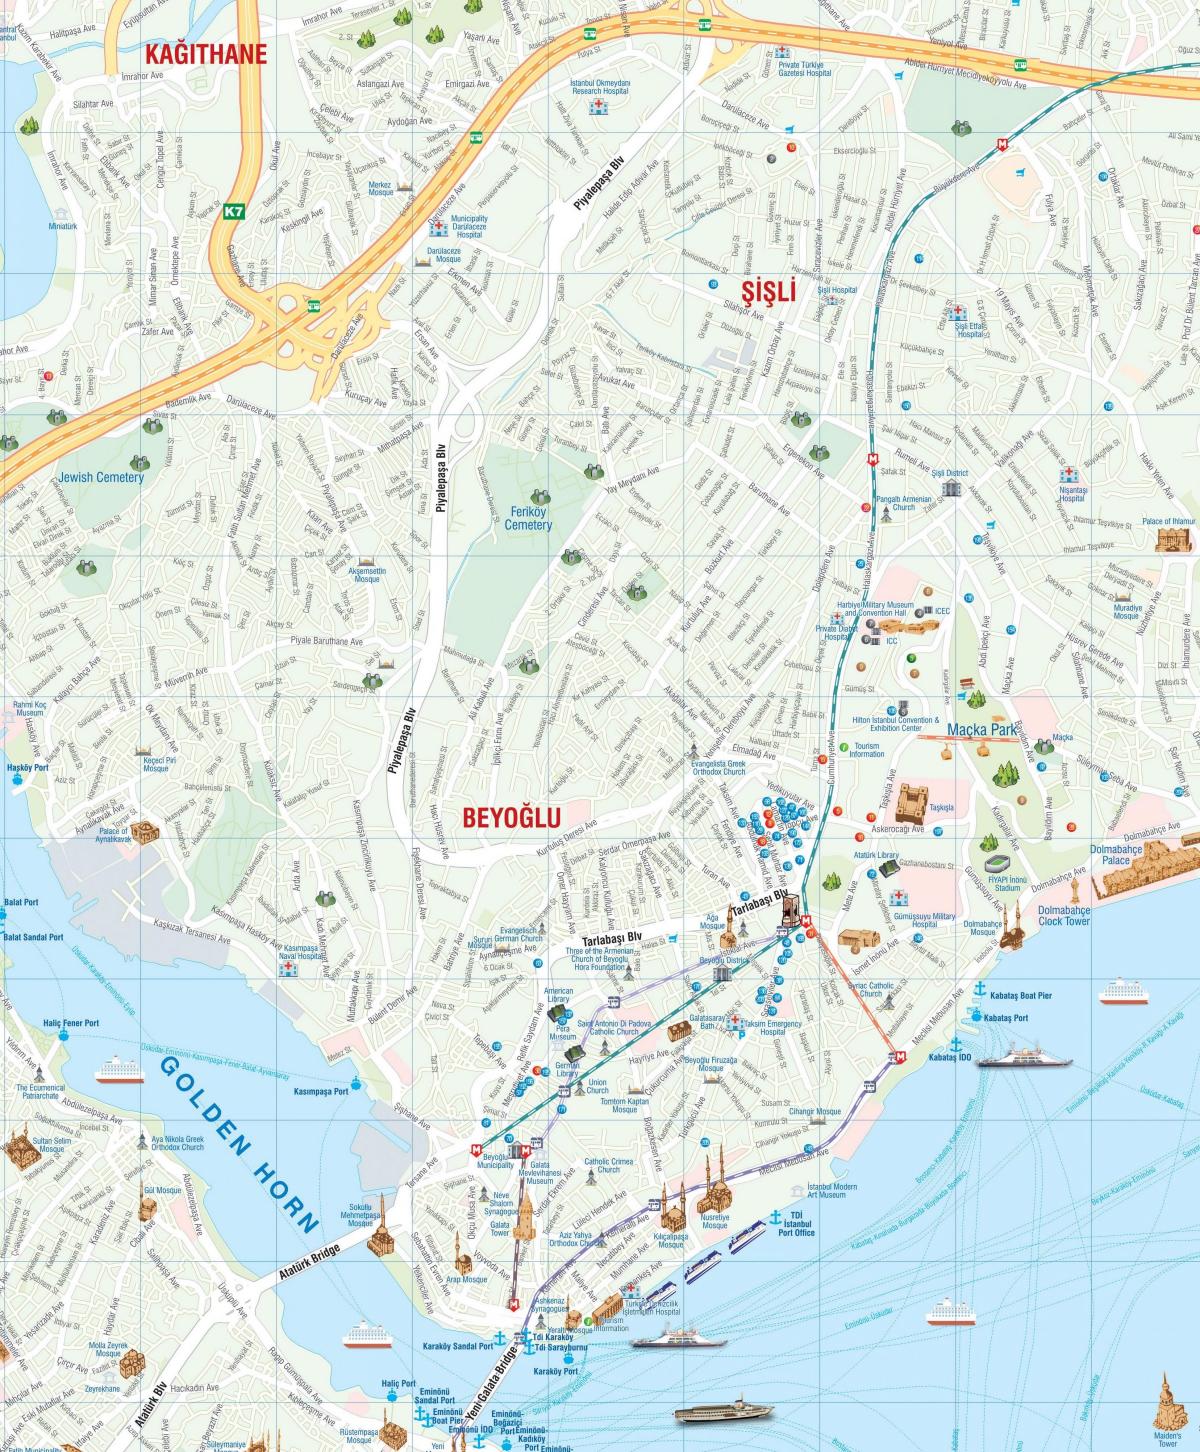 mappa di beyoglu di istanbul